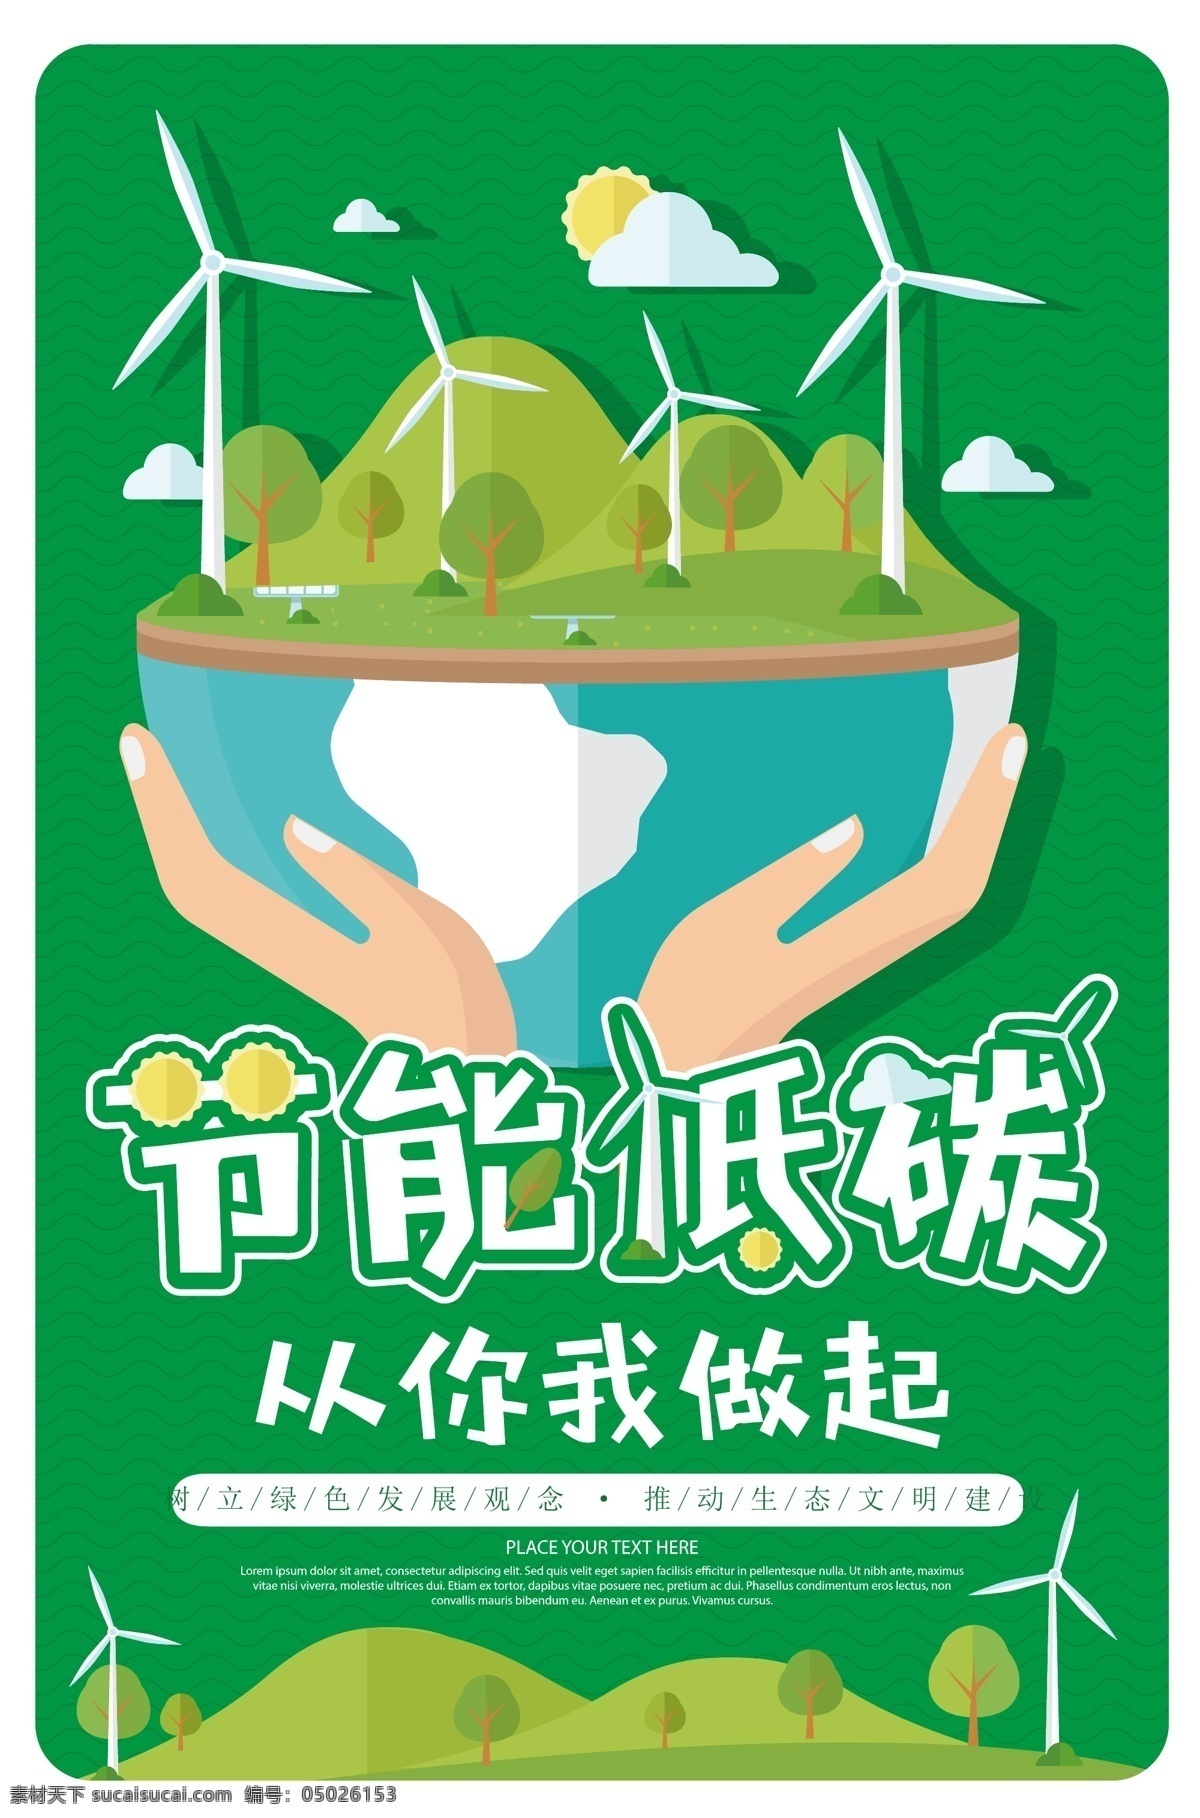 卡通 简约 节能 低 碳 绿色环保 公益 海报 背景 模板 绿色 环保 健康 低碳 背景模板 矢量